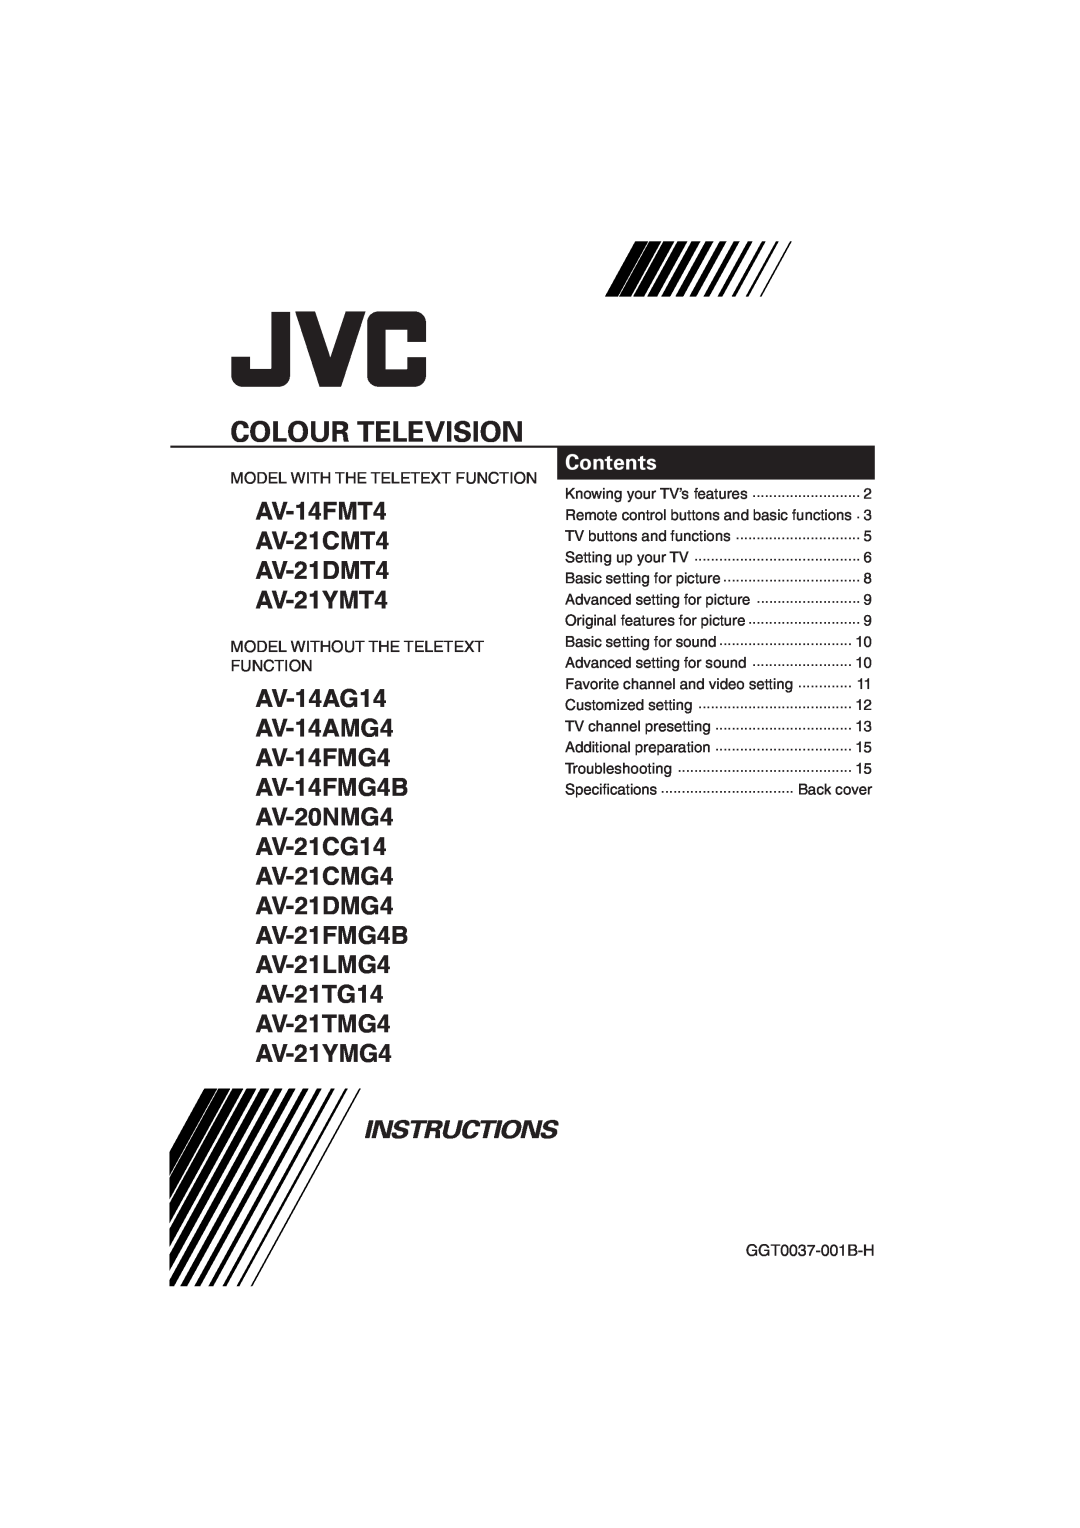 JVC specifications Colour Television, AV-14FMT4 AV-21CMT4 AV-21DMT4 AV-21YMT4, AV-21YMG4, Instructions, Contents 